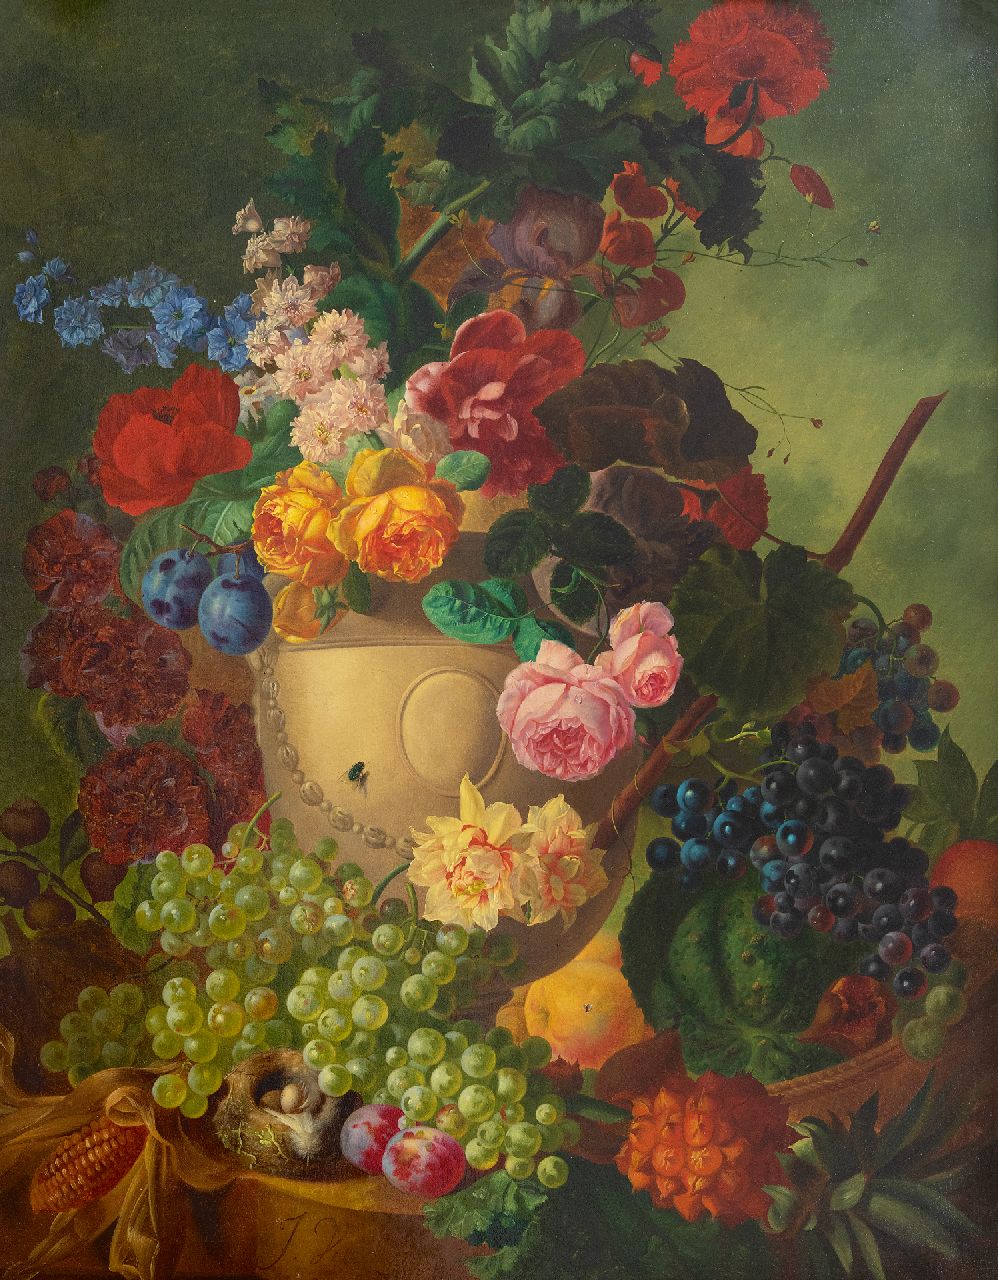 Os J. van | Jan van Os, Stilleven met bloemen, vruchten en een vogelnestje op marmeren plint, olieverf op doek 84,1 x 65,3 cm, gesigneerd linksonder